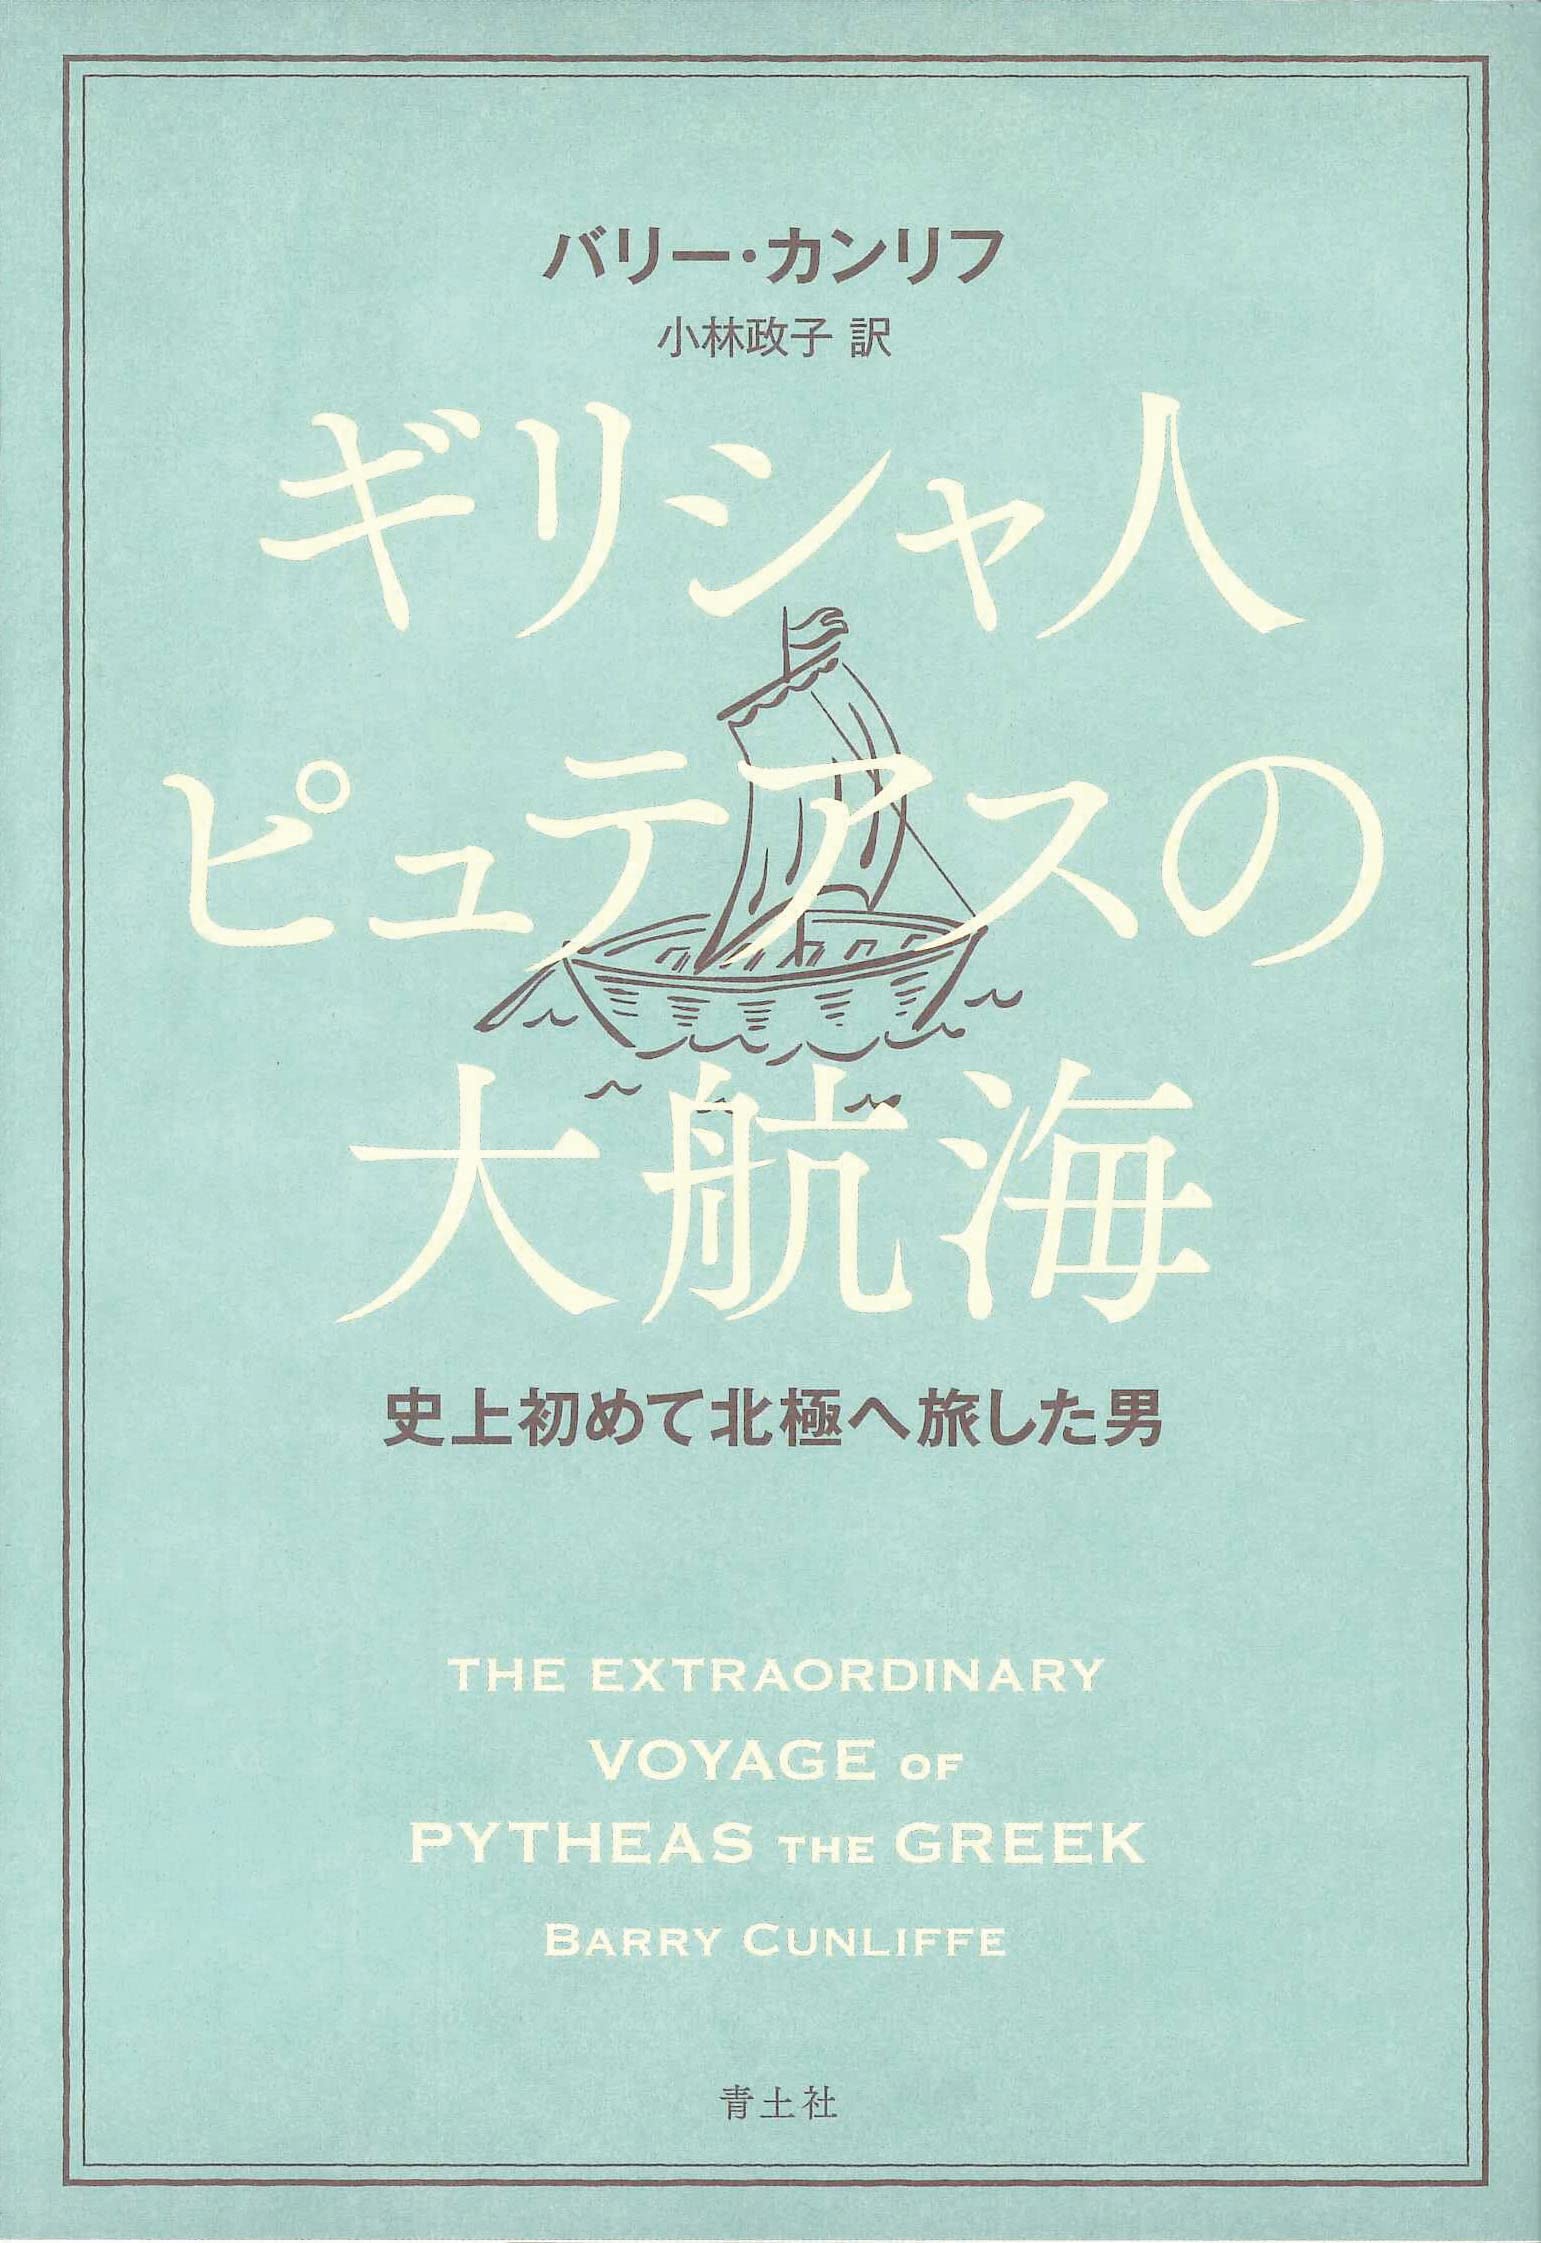 ギリシャ人ピュテアスの大航海: 史上初めて北極へ旅した男